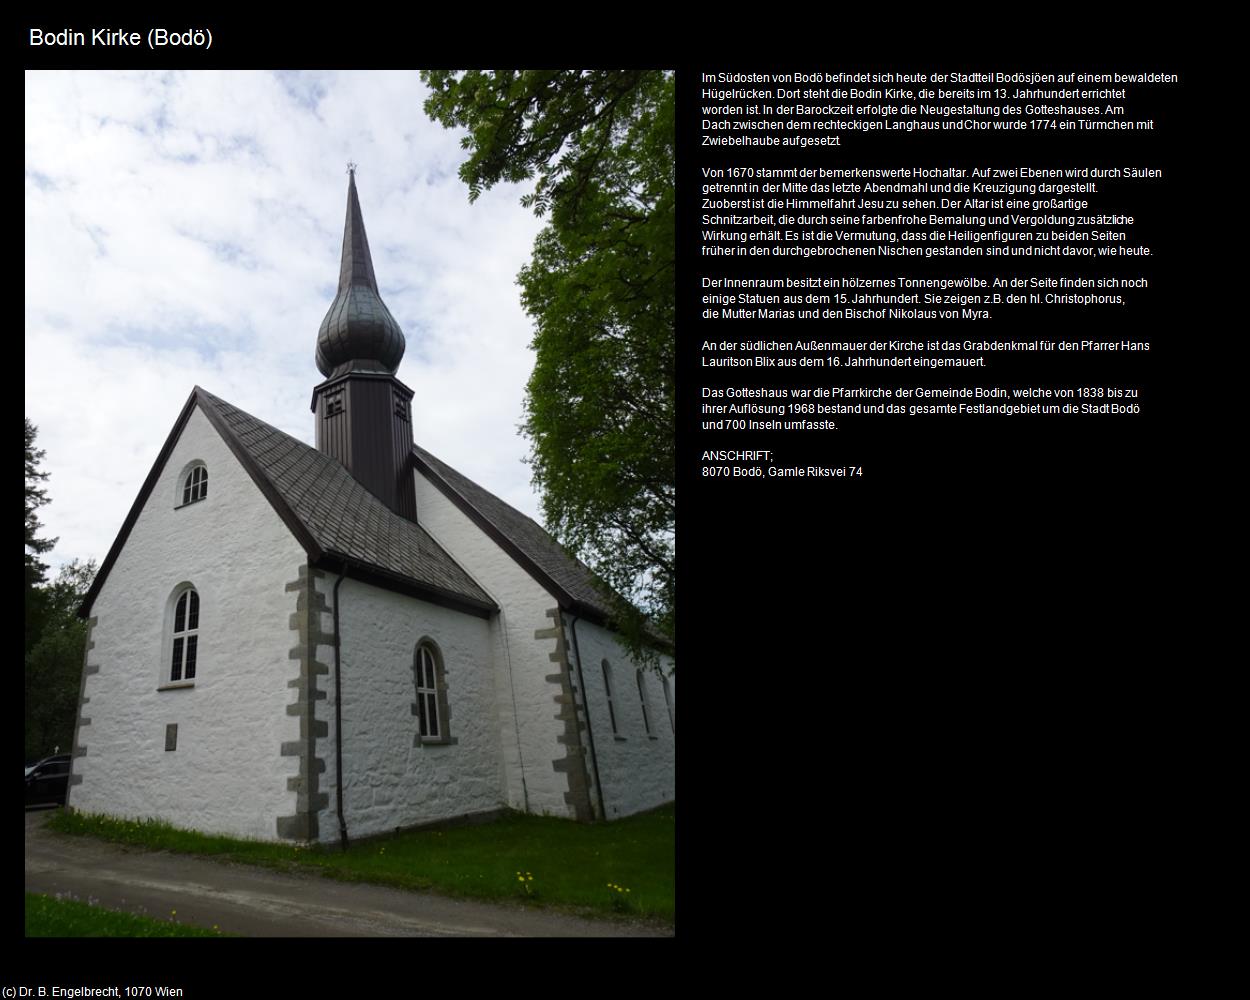 Bodin Kirke (Bodö) in Kulturatlas-NORWEGEN